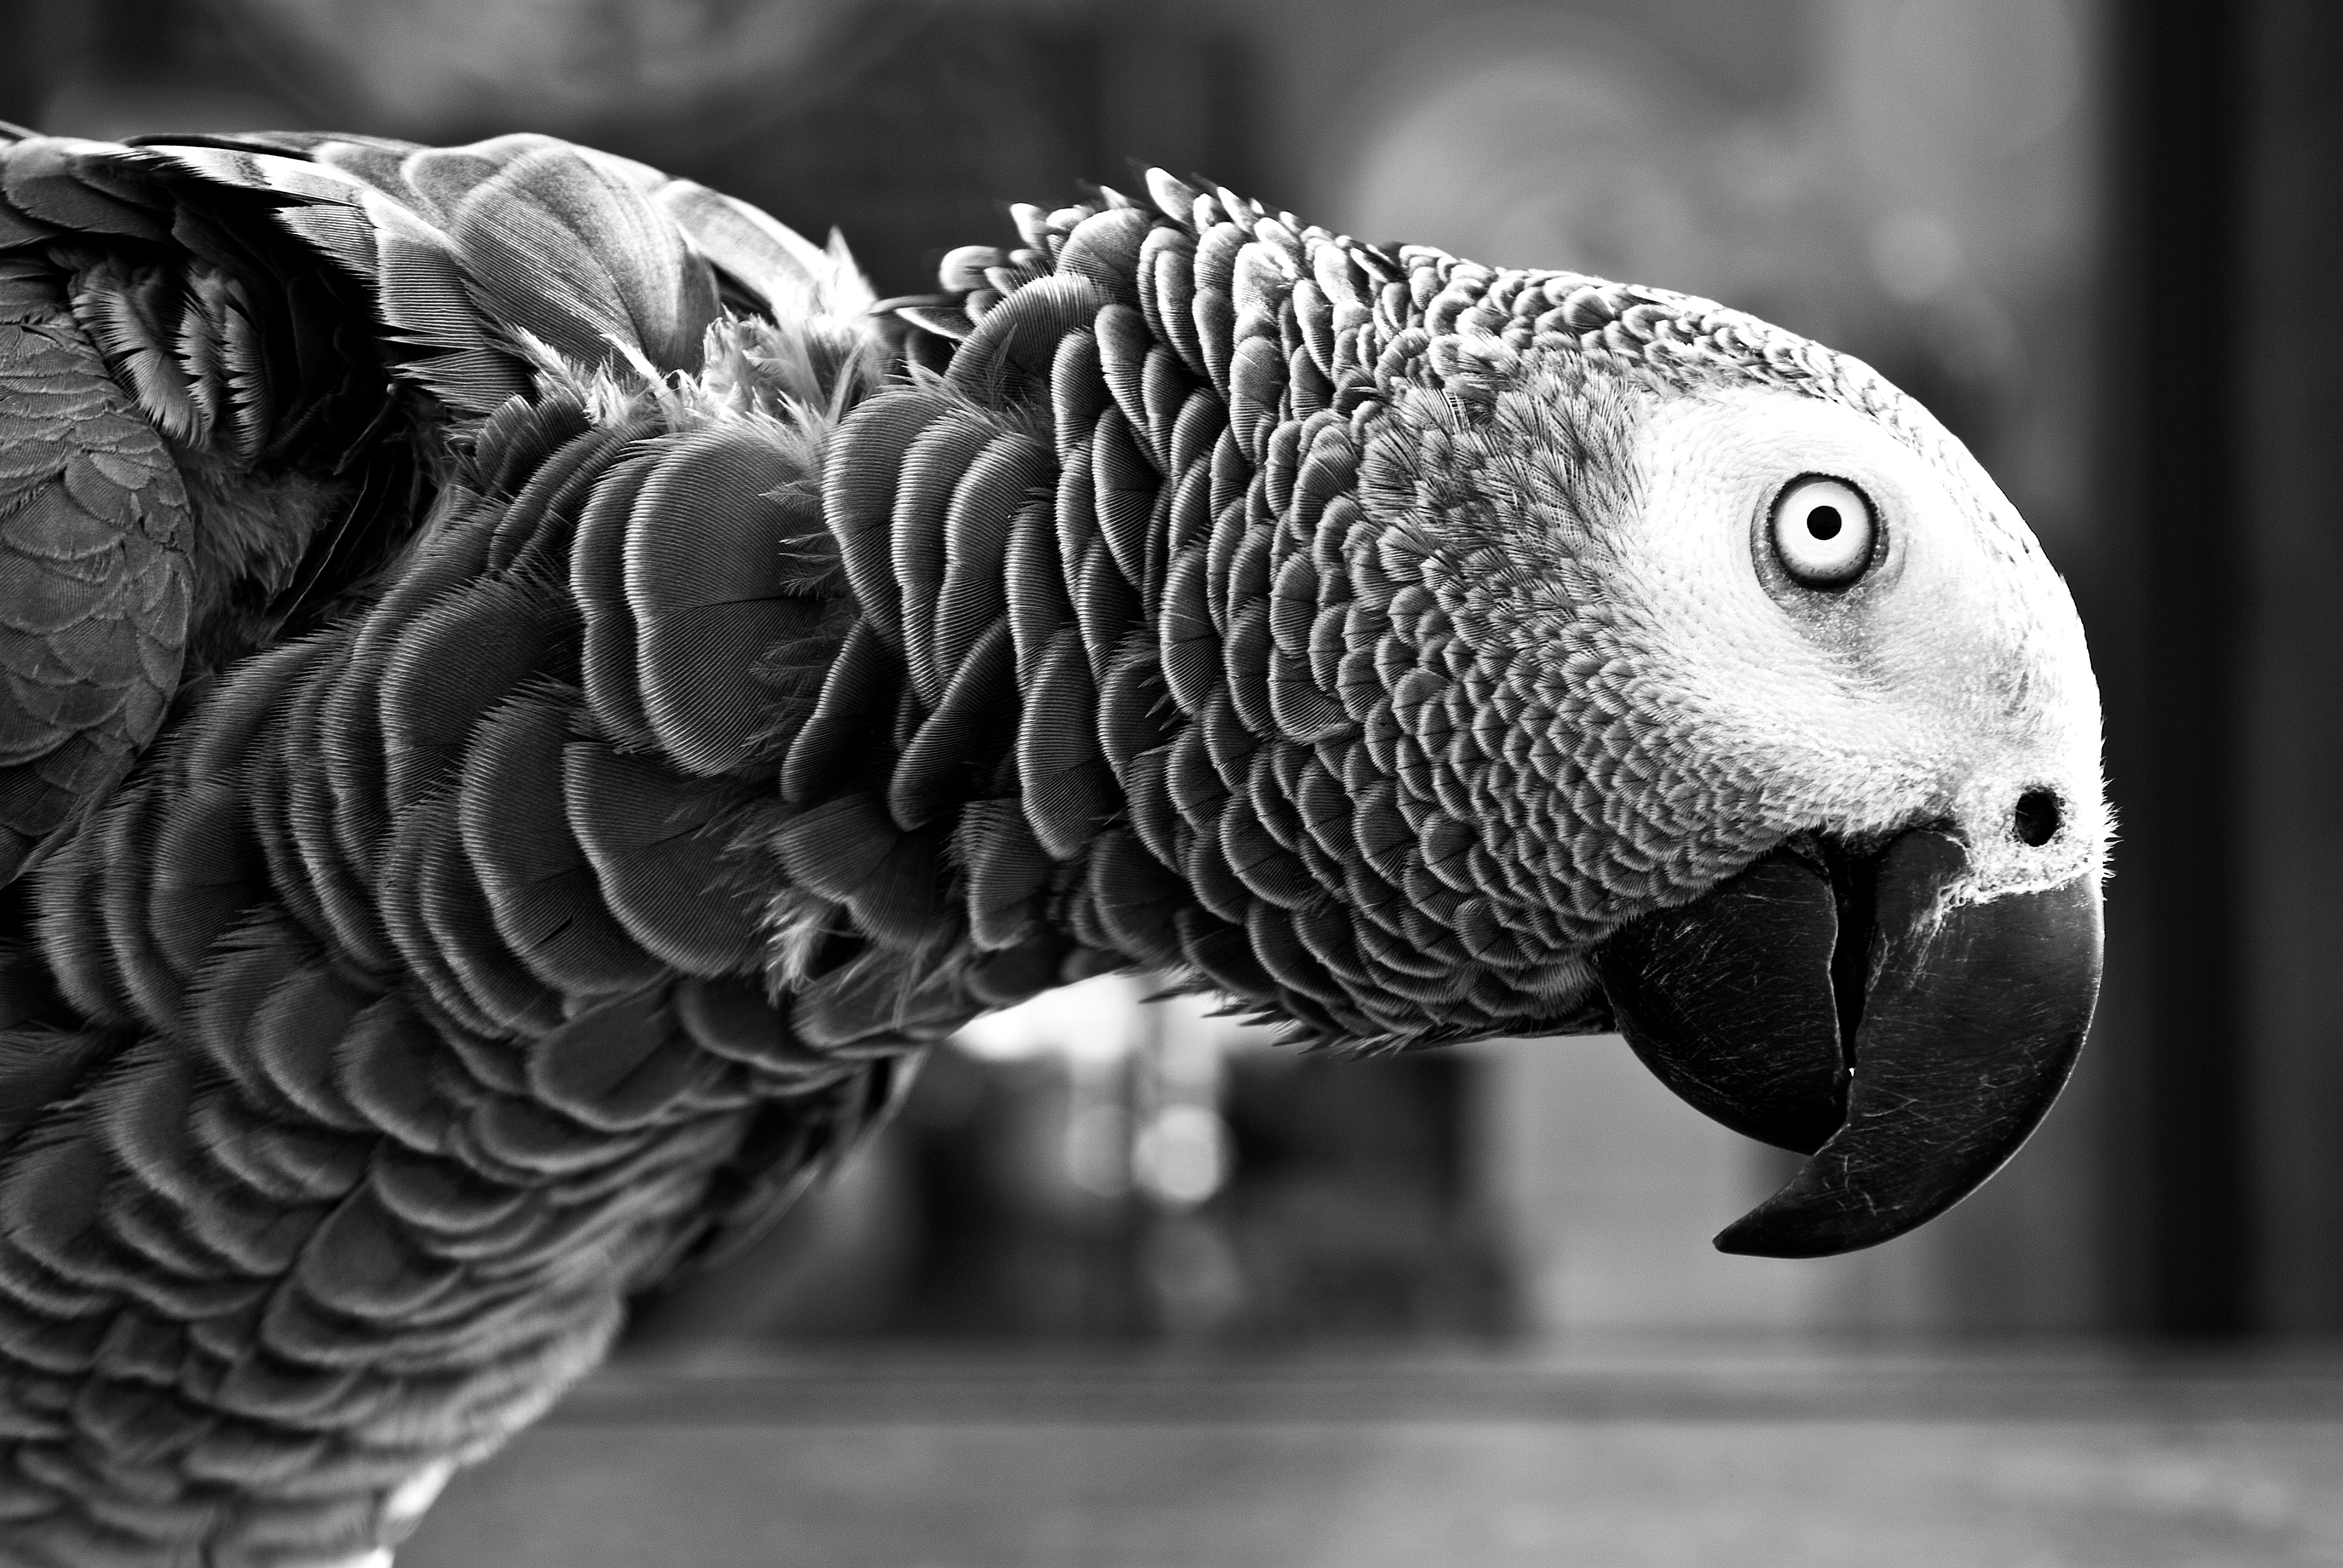 Бесплатное фото Попугай ара на монохромном фото